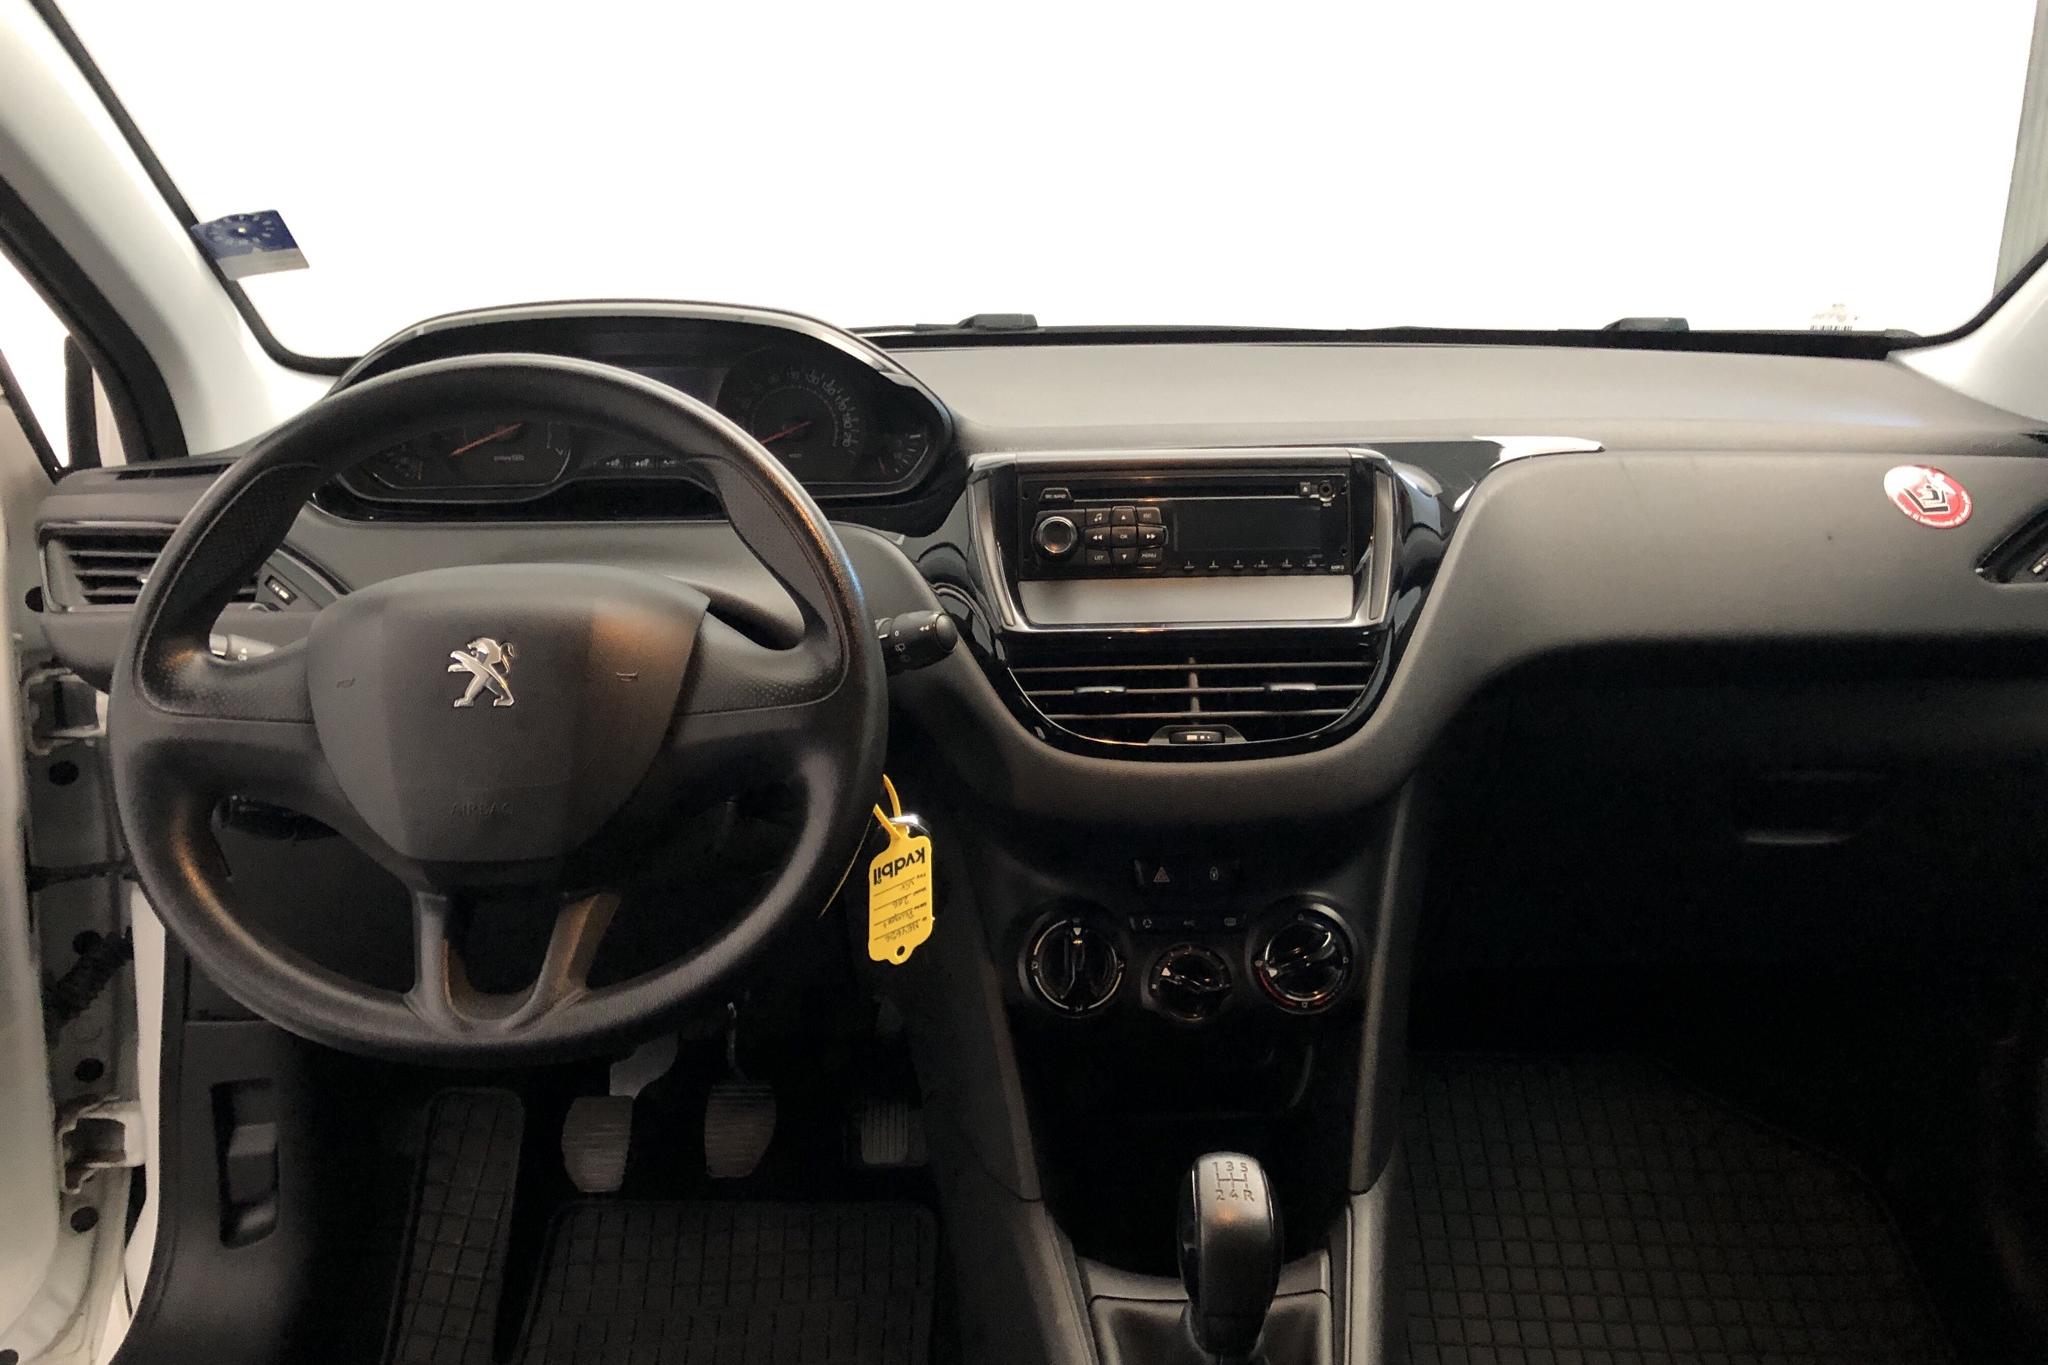 Peugeot 208 1.0 VTi 3dr (68hk) - 118 370 km - Manual - white - 2013